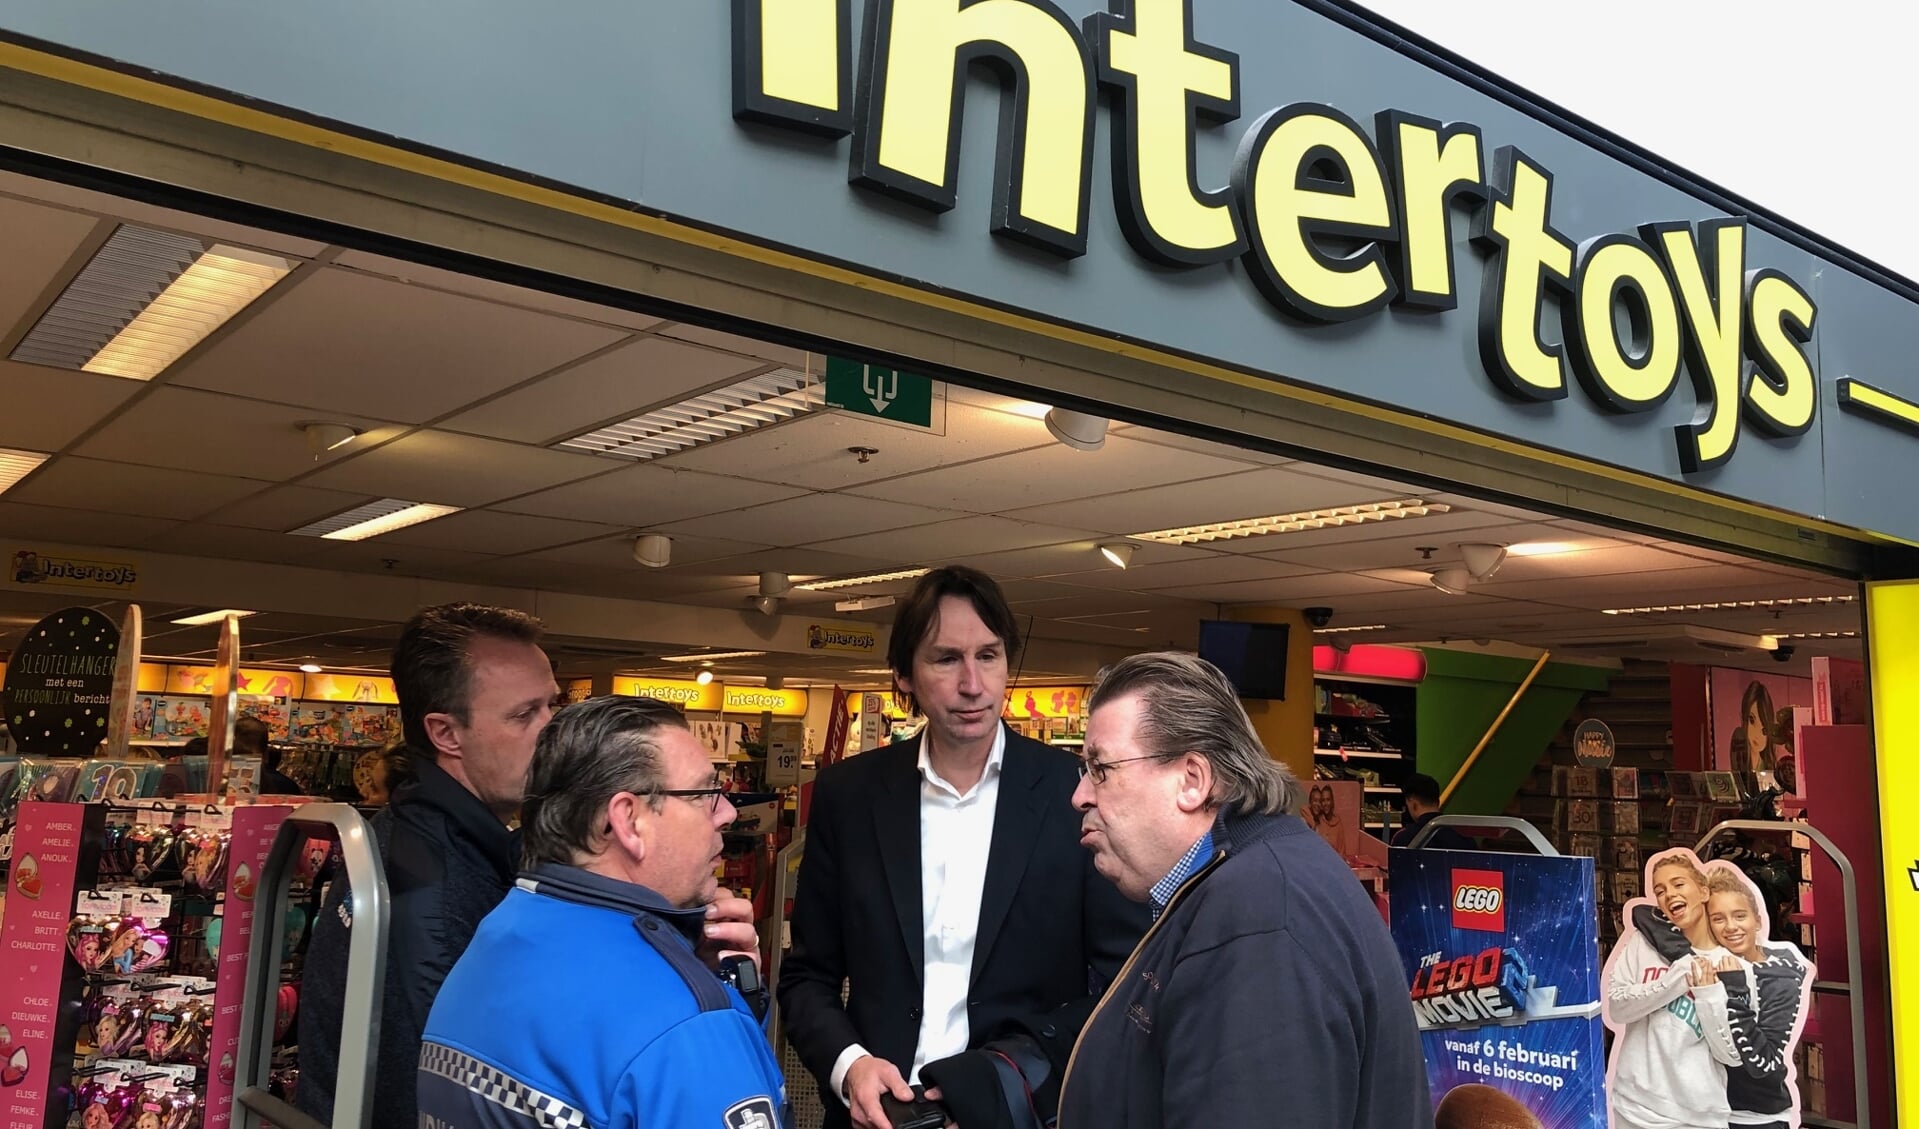 Wethouder Herbert Raat in gesprek met Intertoys-eigenaar Hans de Groot.